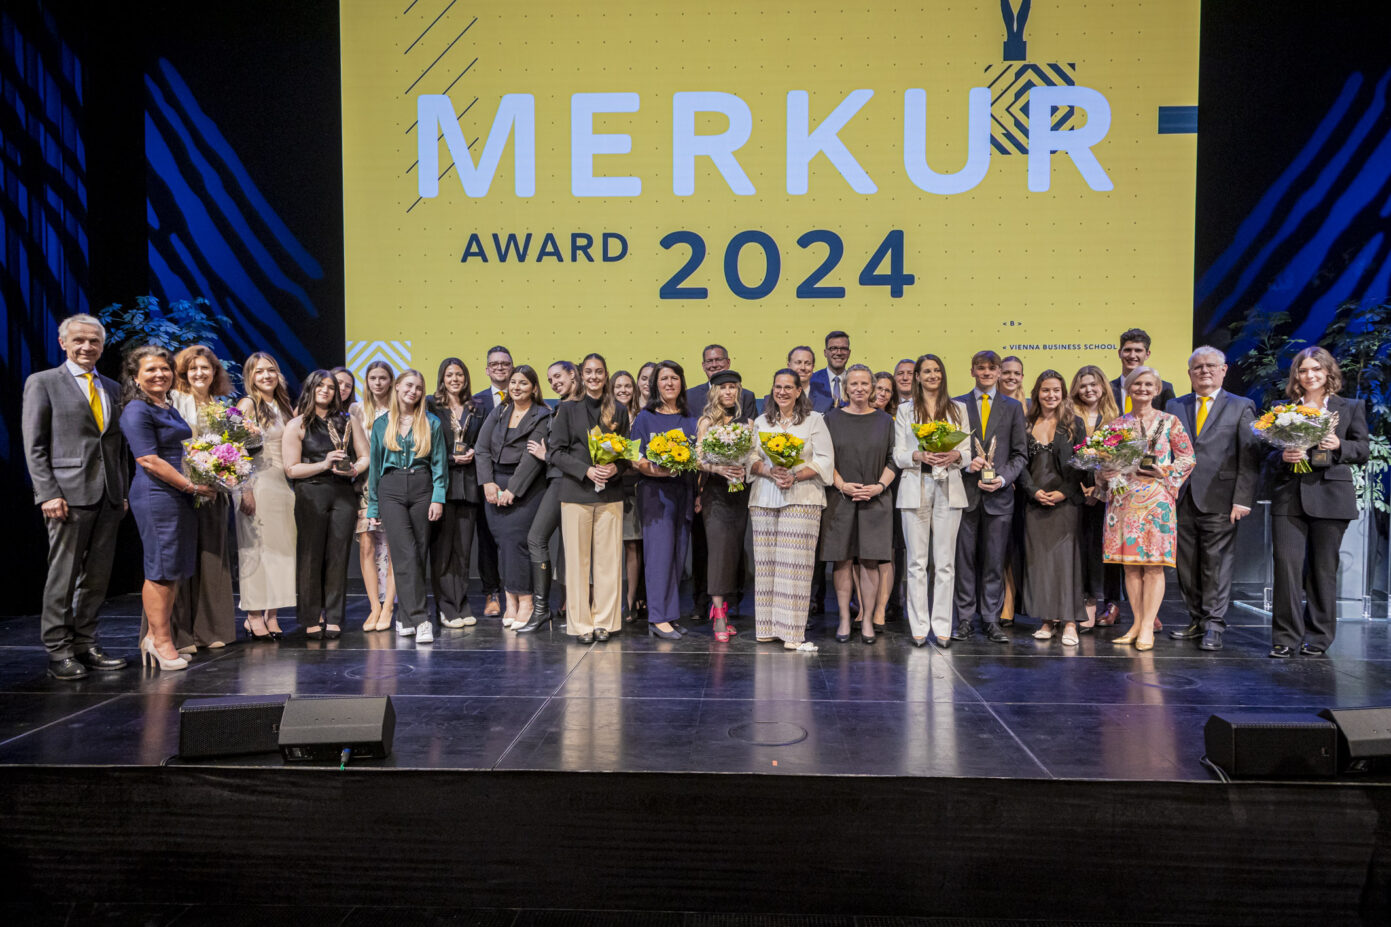 merkur award 2024